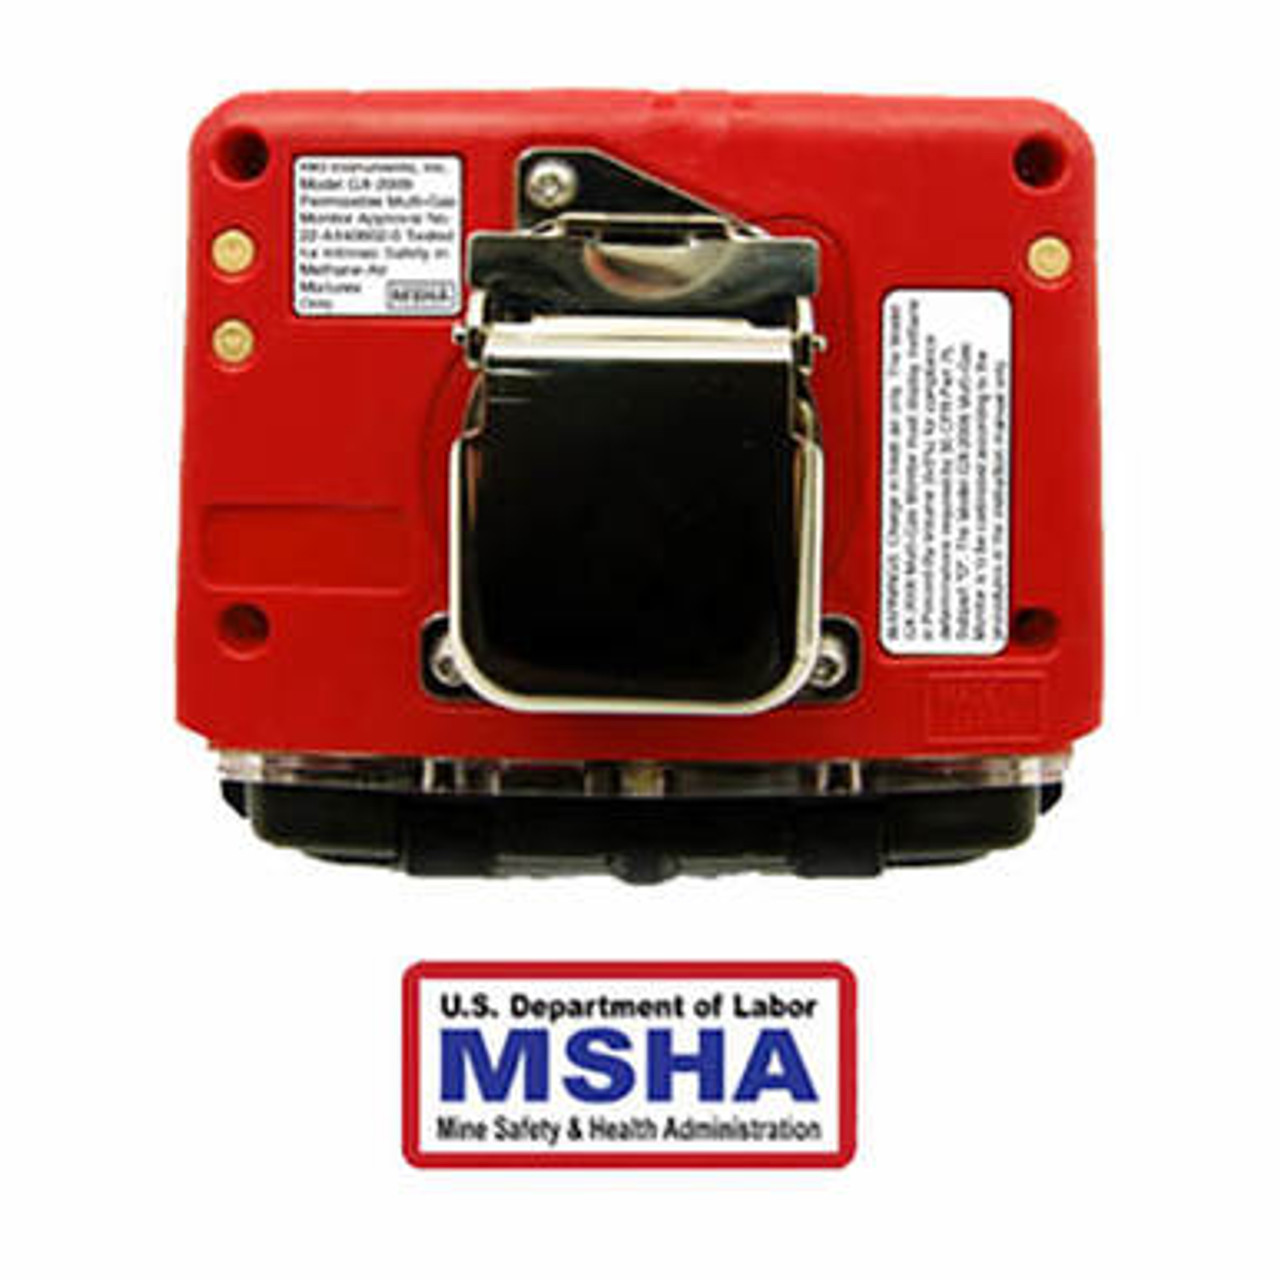 RKI GX-2009 MSHA 4-Gas Confined Space Monitor 72-0314-MSHA-C